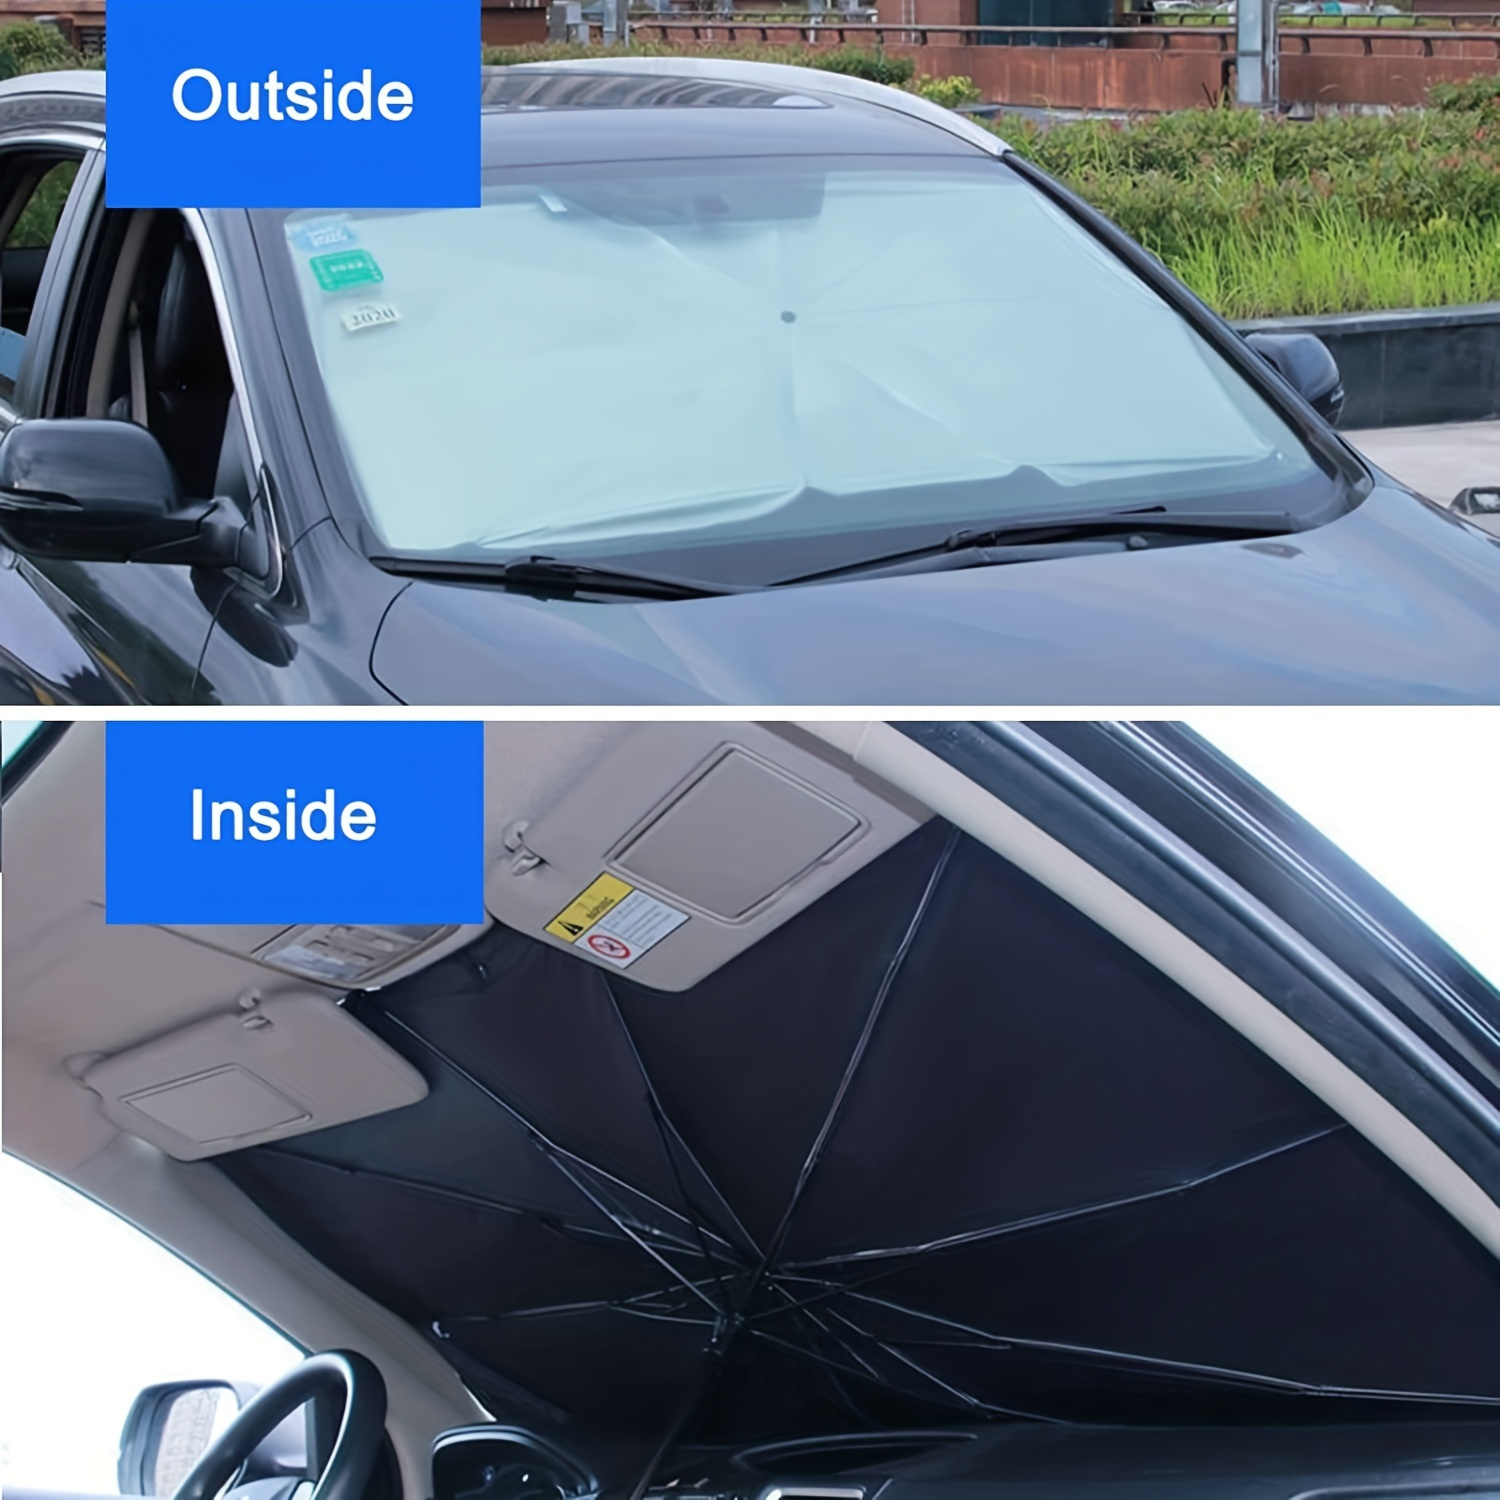 Windschutzscheibenschirm Für Auto - Kostenlose Rückgabe Innerhalb